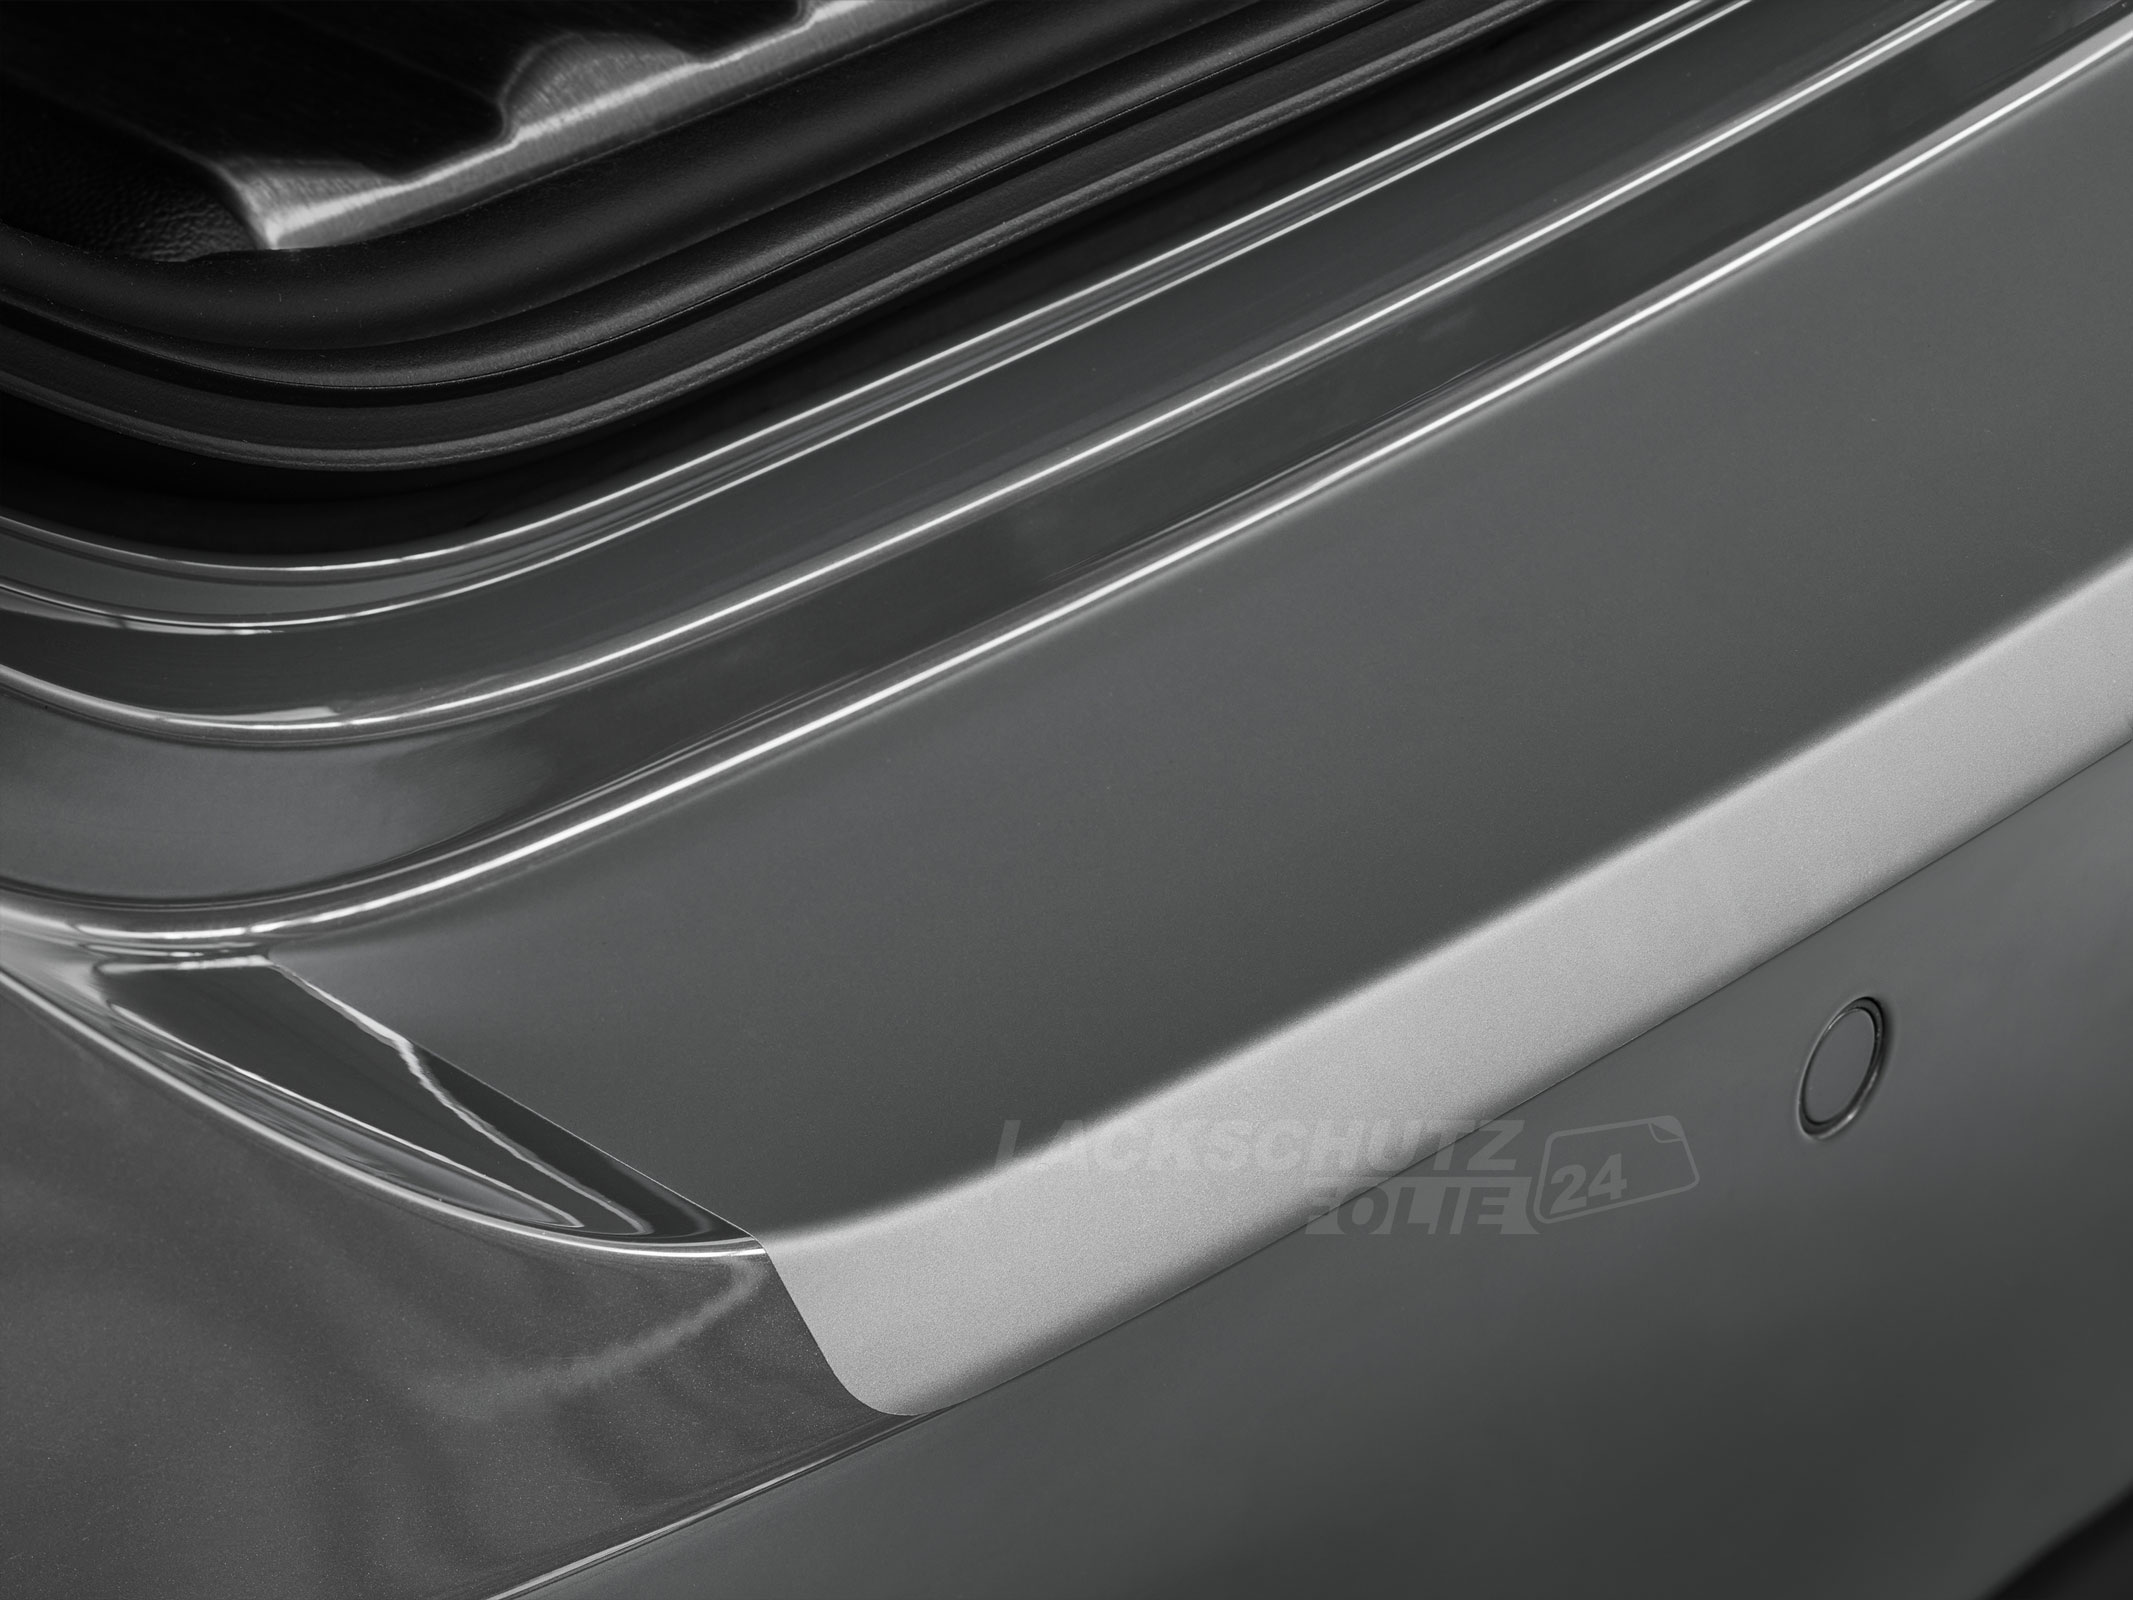 Ladekantenschutzfolie - Transparent Glatt MATT für BMW 3er Cabrio Typ E93, BJ 2007-10/2014